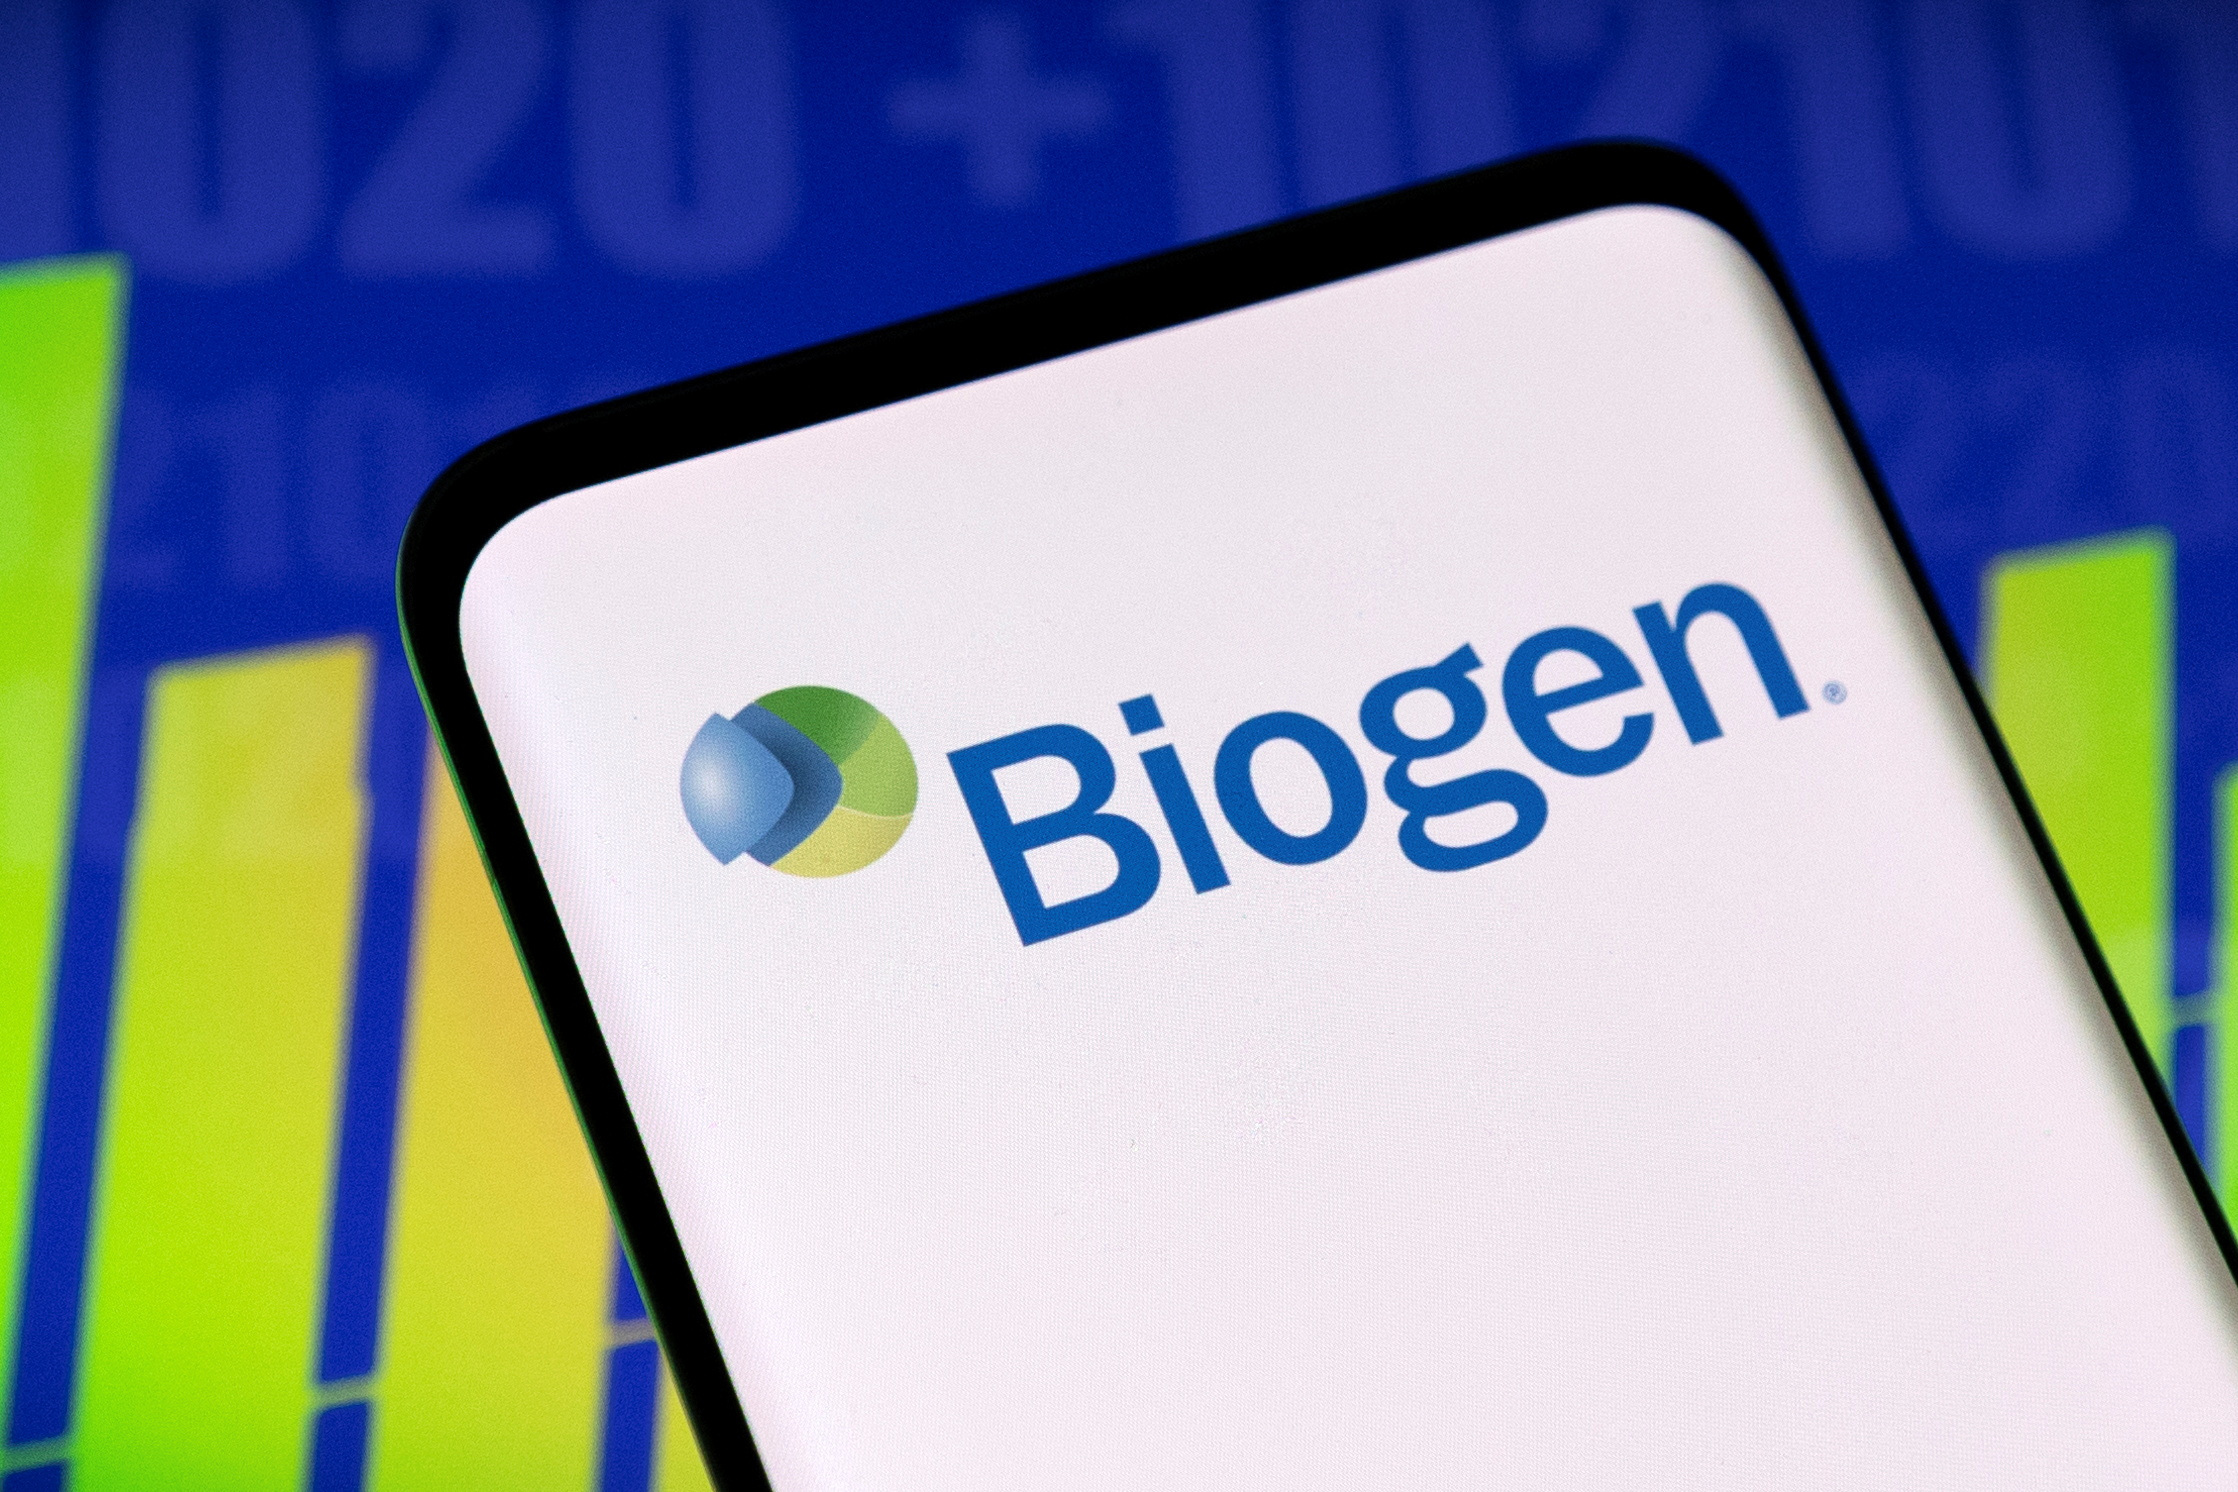 Illustration shows Biogen logo